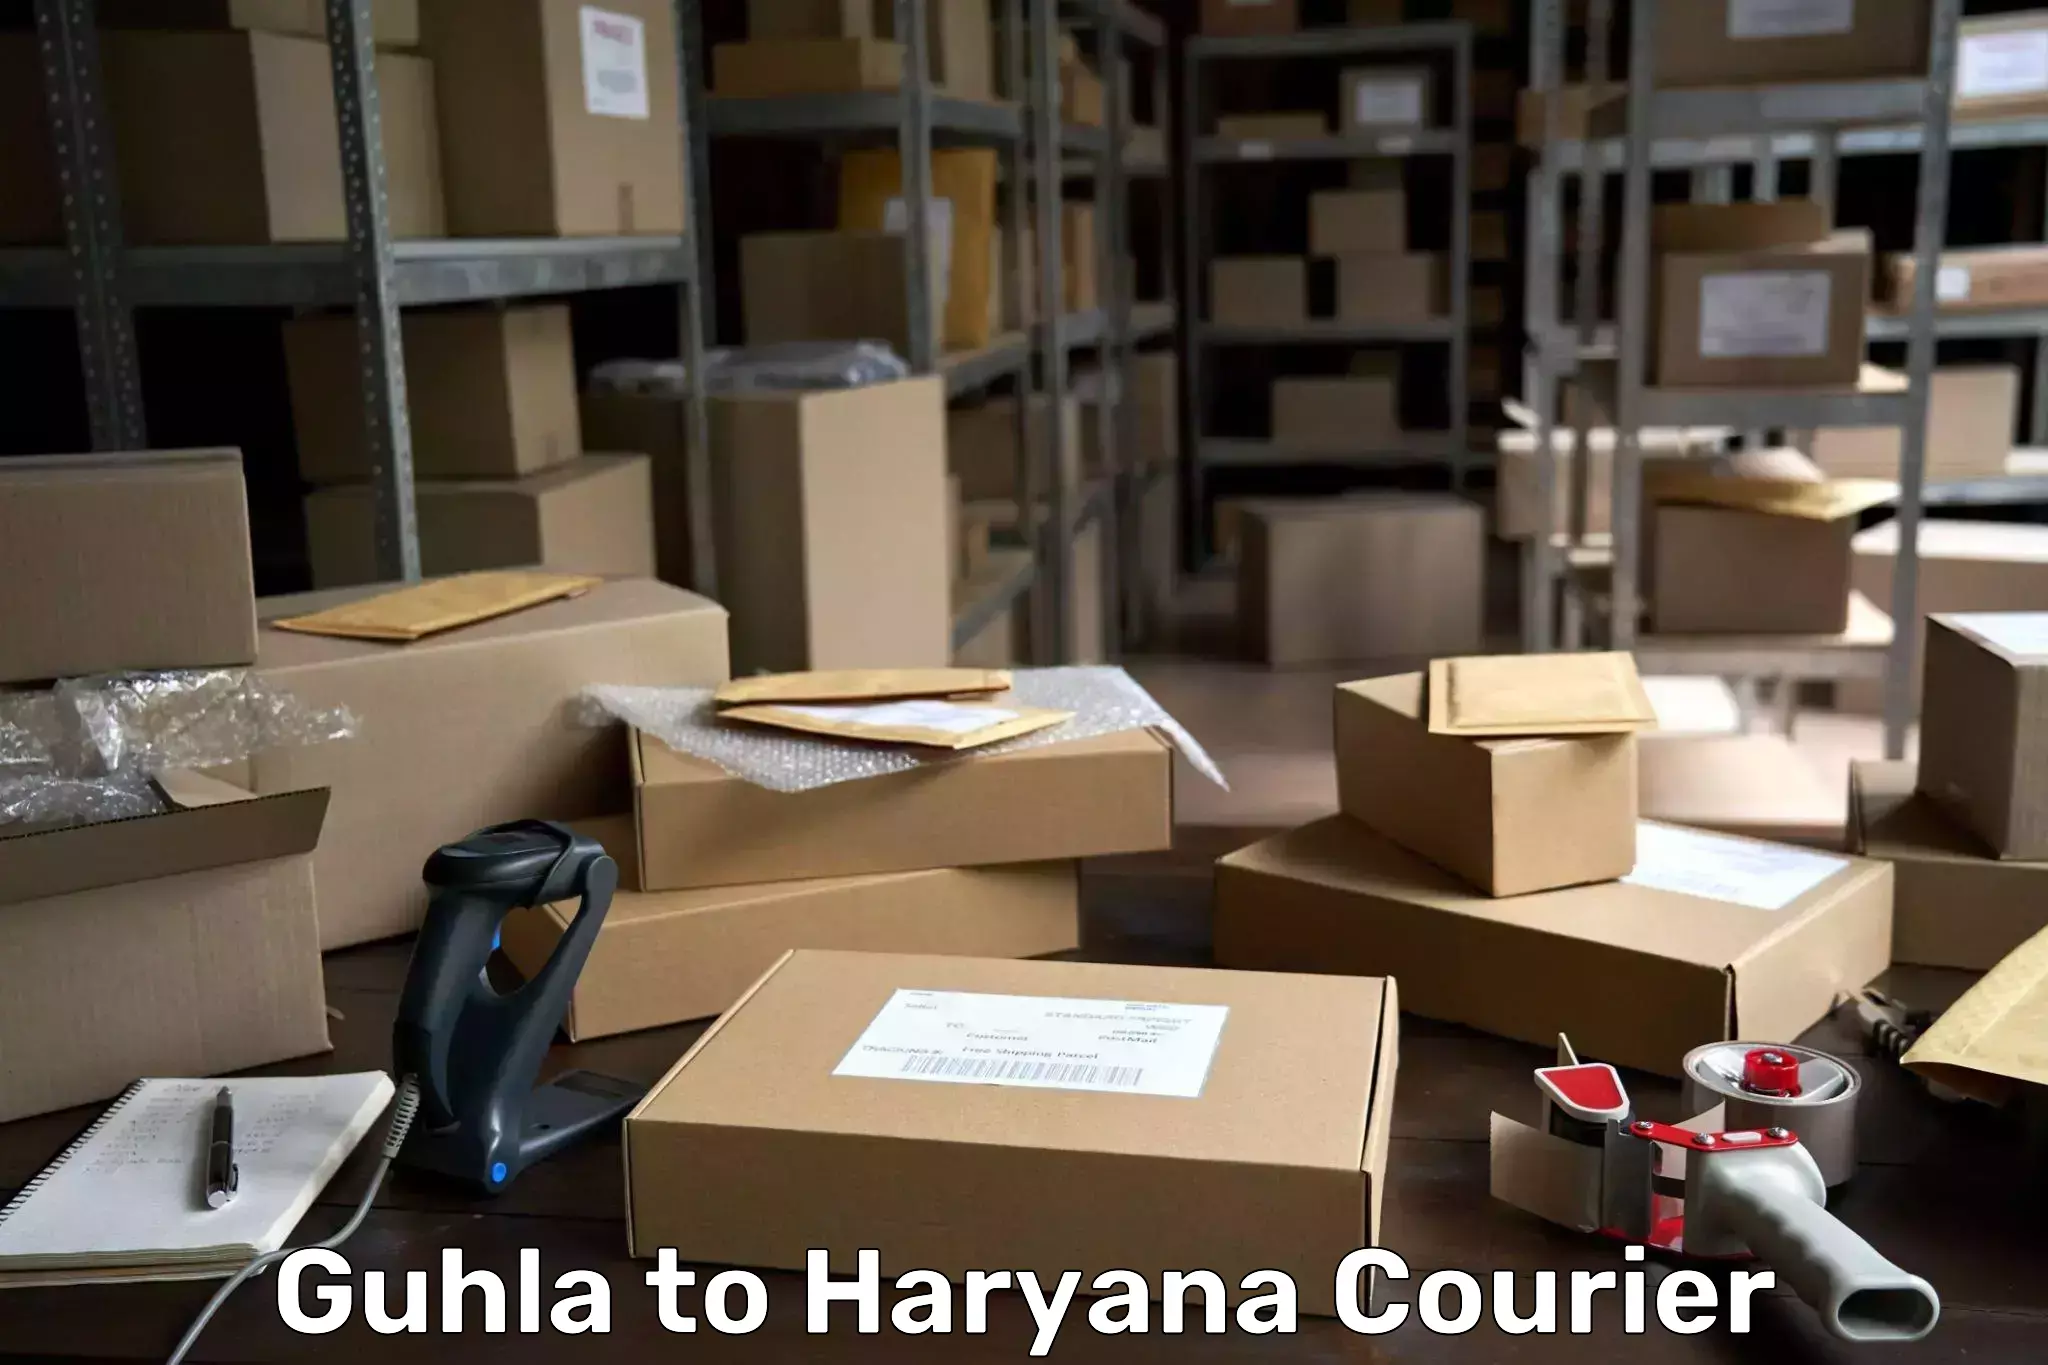 Reliable package handling Guhla to Chirya